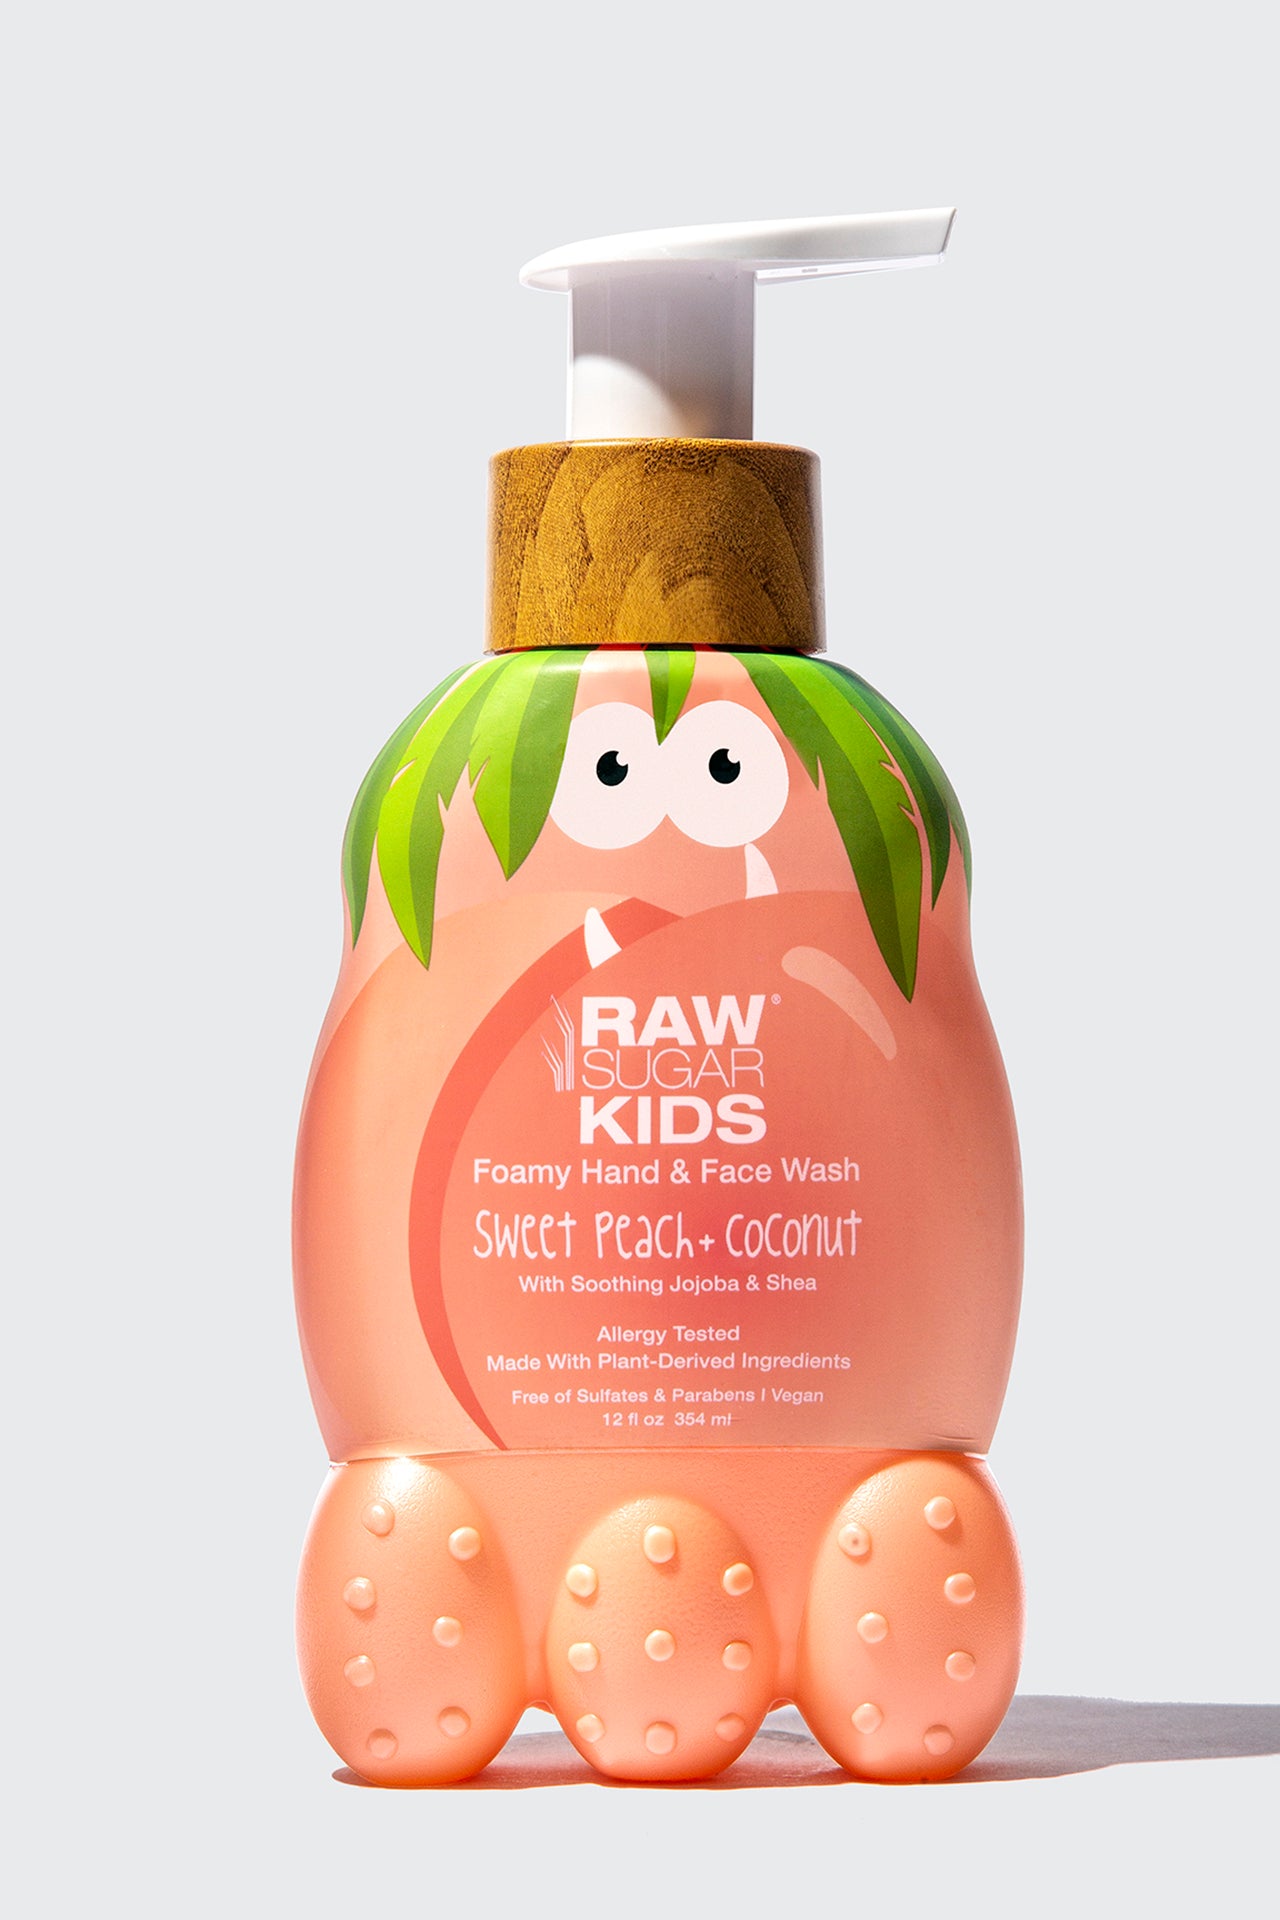 Raw Sugar Kids Bubble Bath + Body Wash - Strawberry Vanilla, 12 fl oz